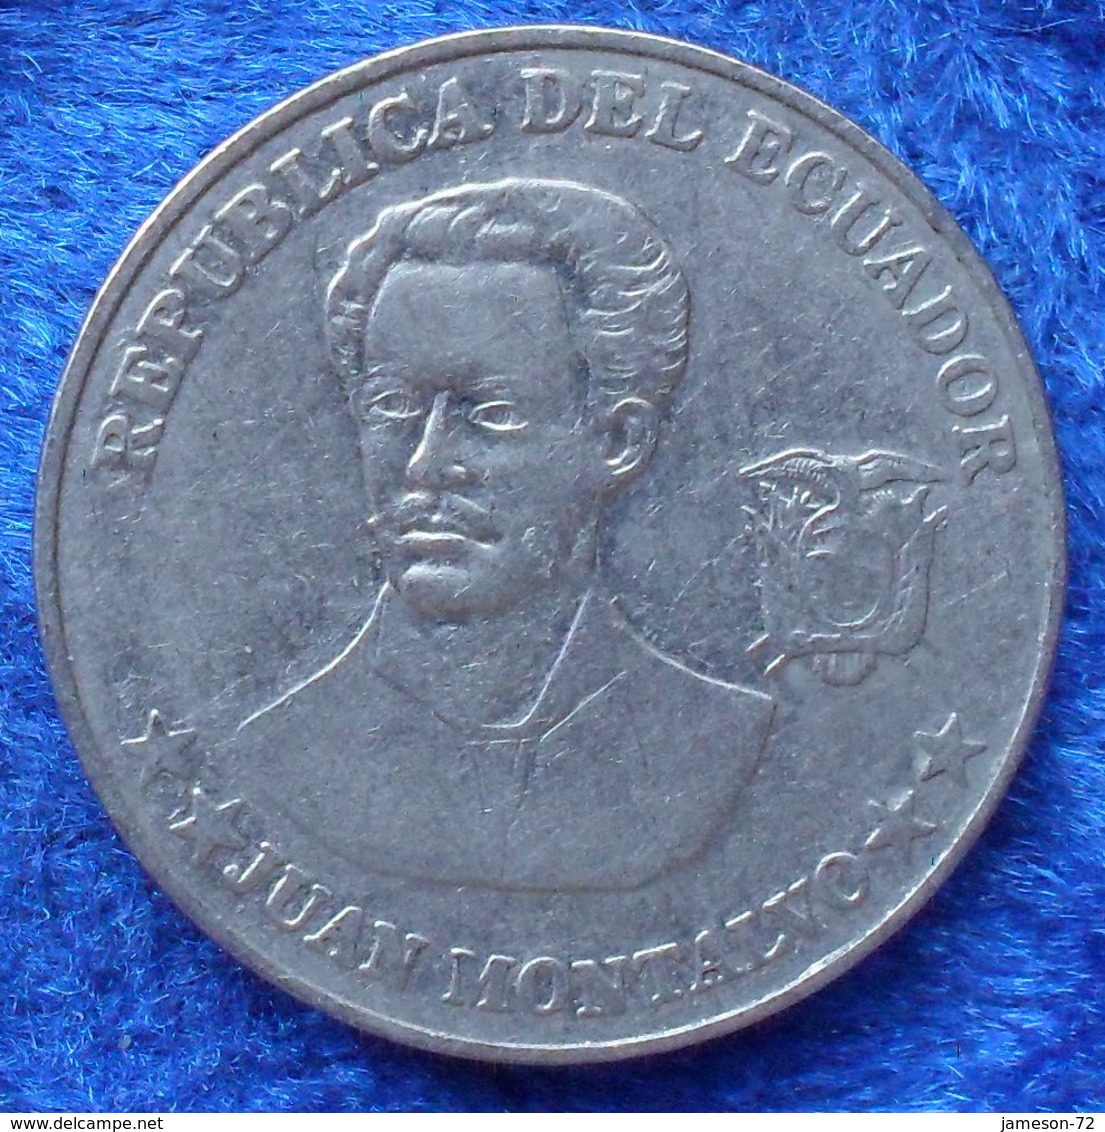 ECUADOR - 5 Centavos 2000 "Juan Montalvo" KM# 105 Reform Coinage (2000) Coin - Ecuador